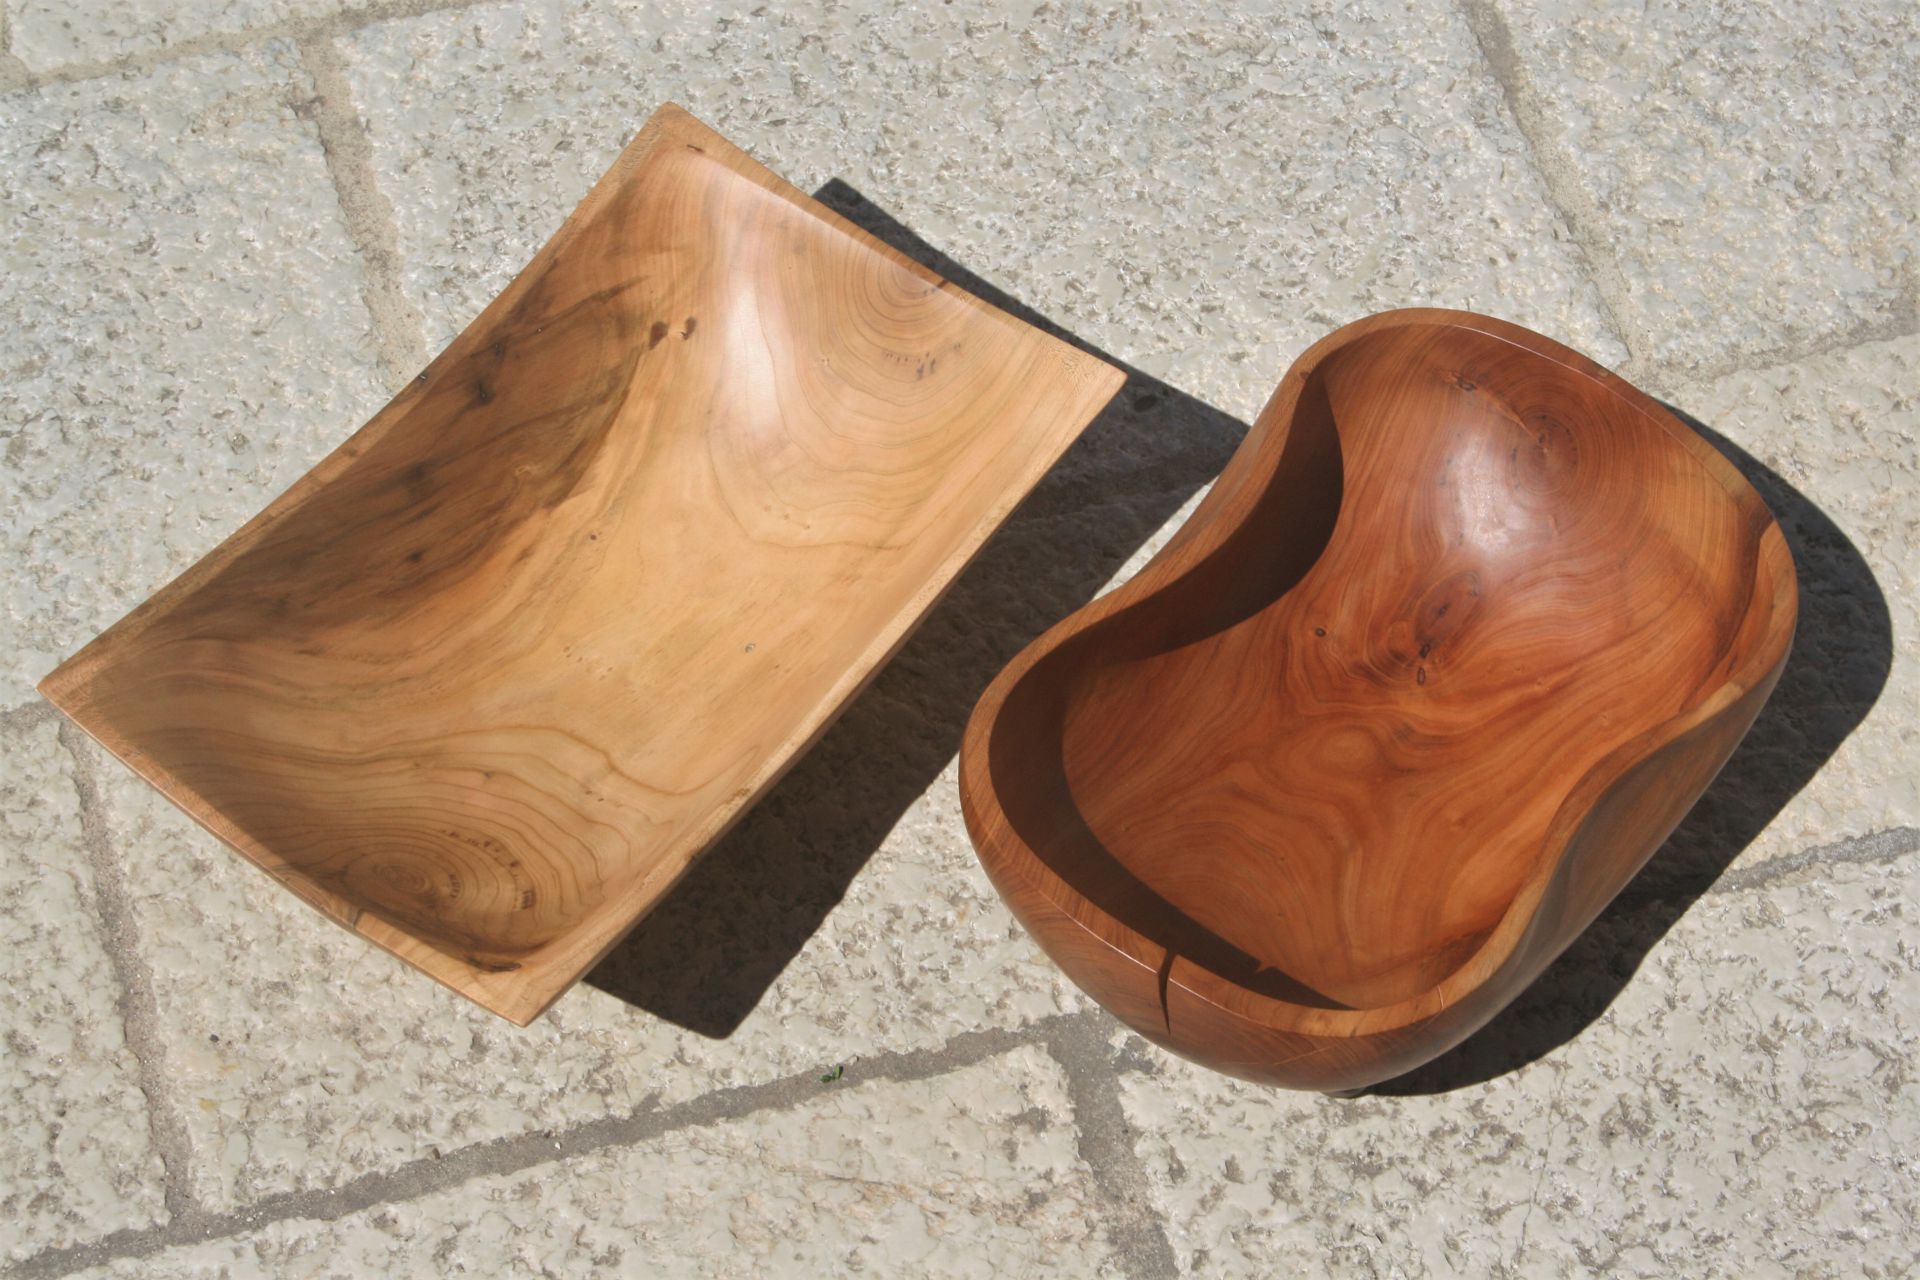 apricot wood bowls color change unique handmade sanisio artist design home detail